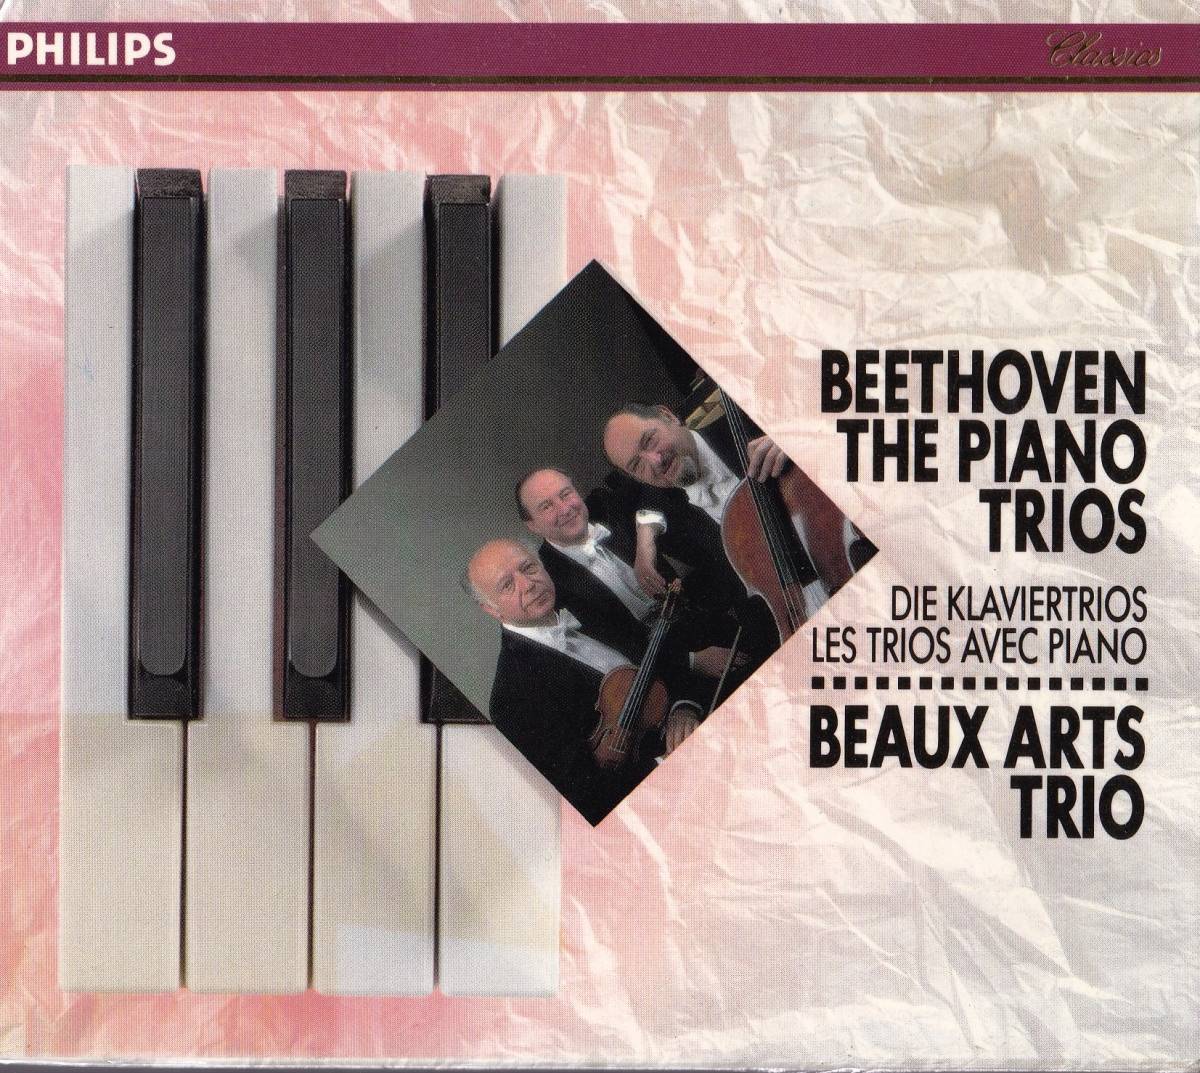  снят с производства супер редкий 5CDbo The -ru* Trio беж to-ven фортепьяно три слоя . искривление полное собрание сочинений 